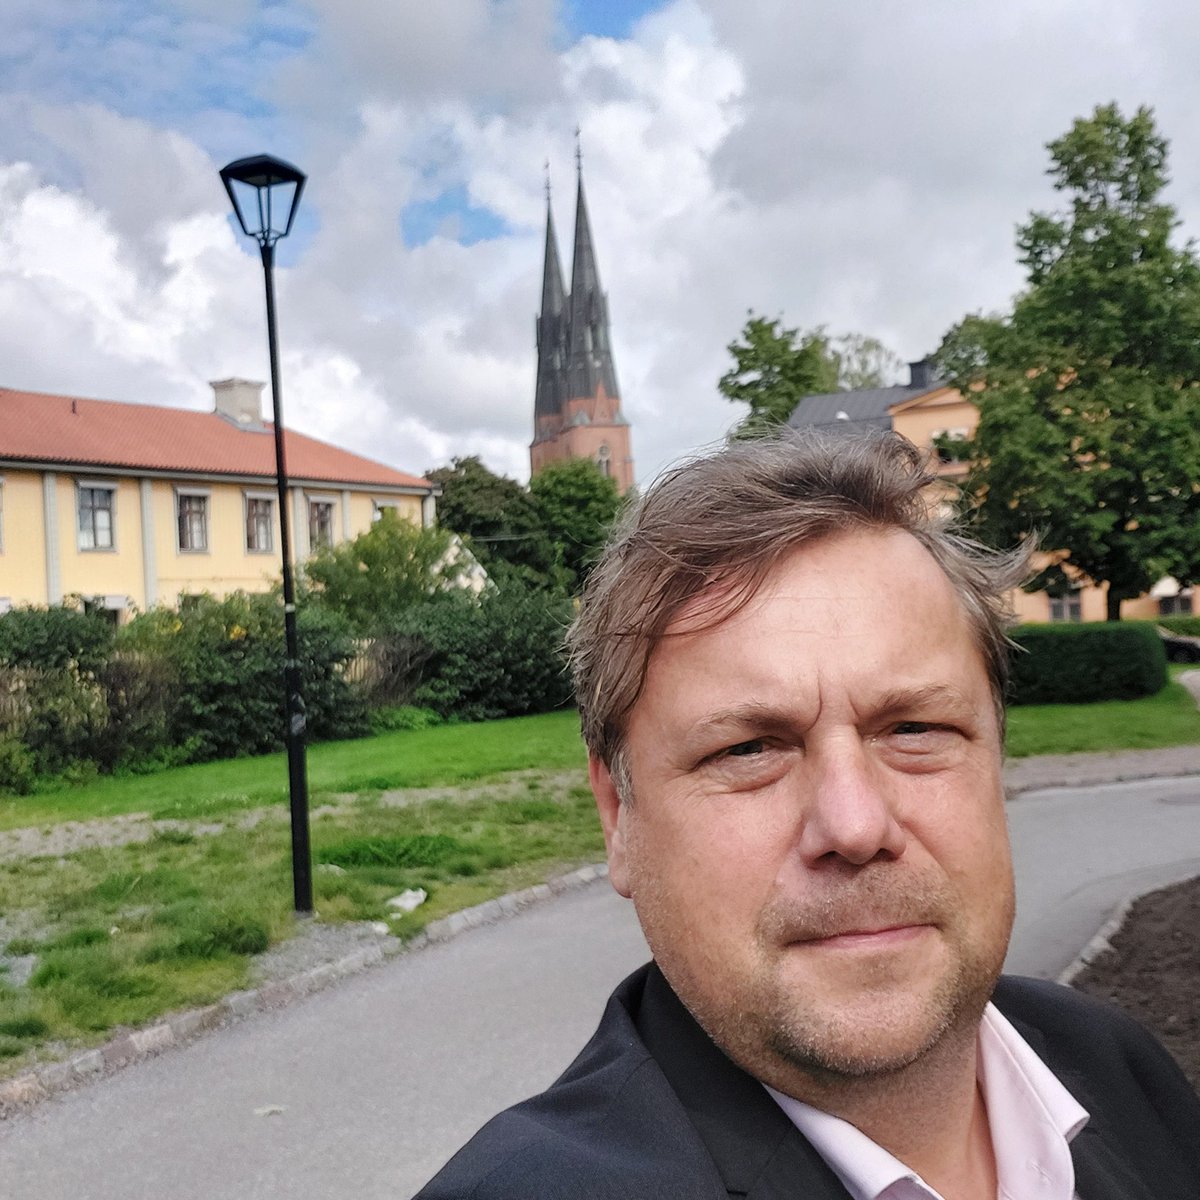 Uppsala❤️. Miałem przyjemność towarzyszyć Pani @MMGosiewska i Pani @ambJHofman podczas wizyty w tym pięknym mieście oraz uczestniczyć w spotkaniu z Gubernatorem @SAttefall i Stenem Bernhardssonem. Już wkrótce wspólne projekty kulturalne @PLinstStockholm i @Uppsalakommun . 🇸🇪🤝🇵🇱